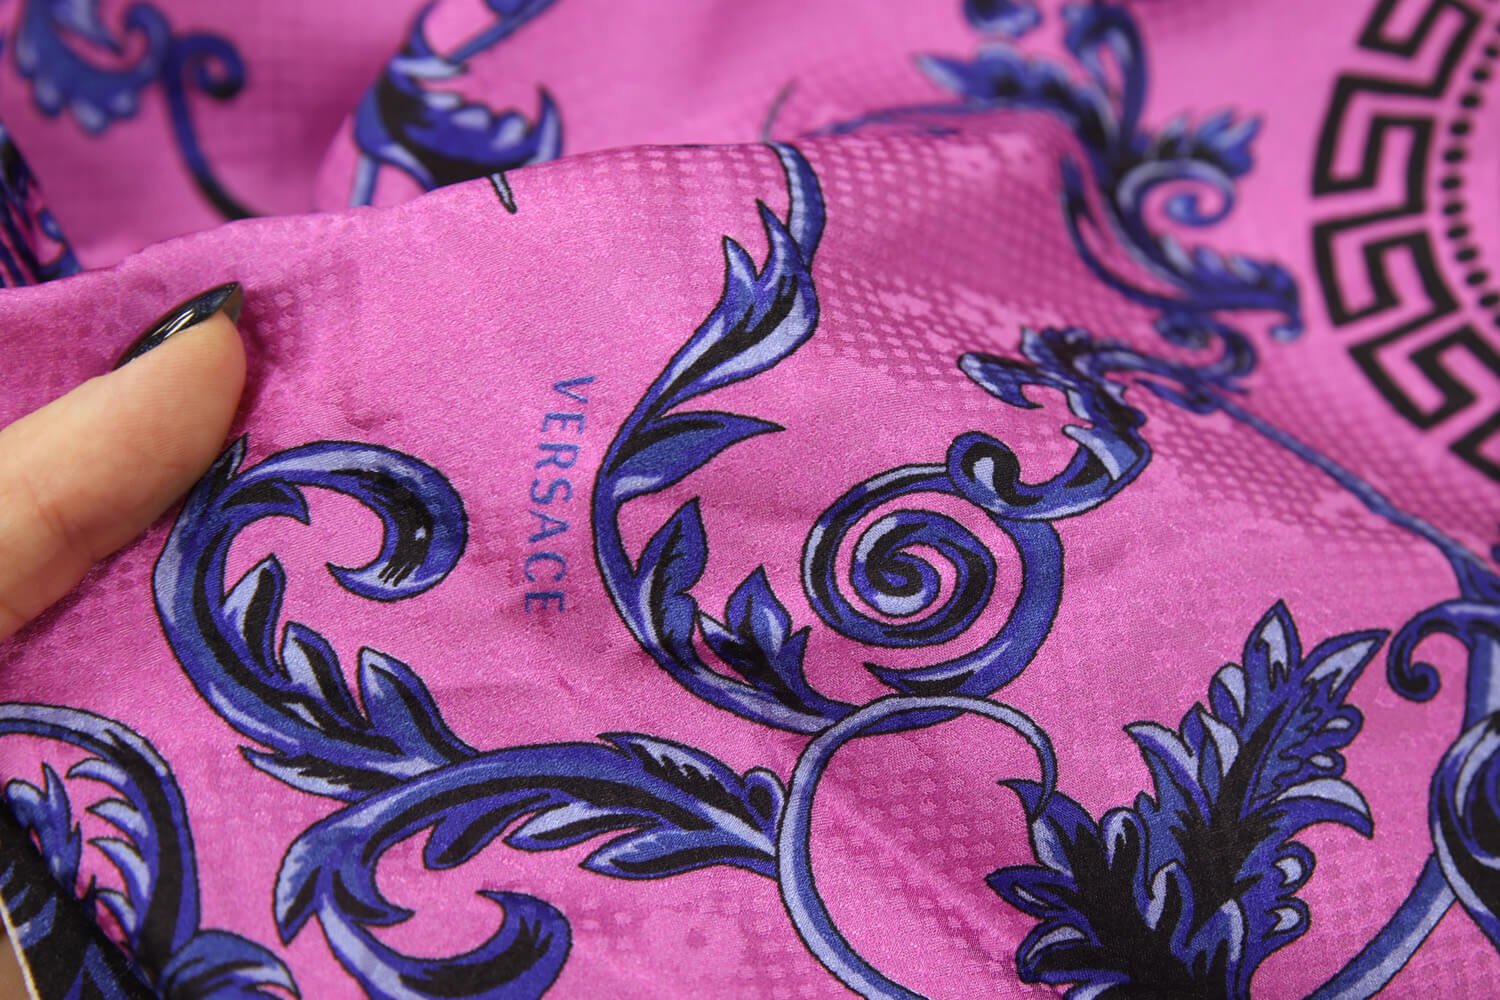 Шёлк жаккардовый Versace, цвет Розовый, фото 1